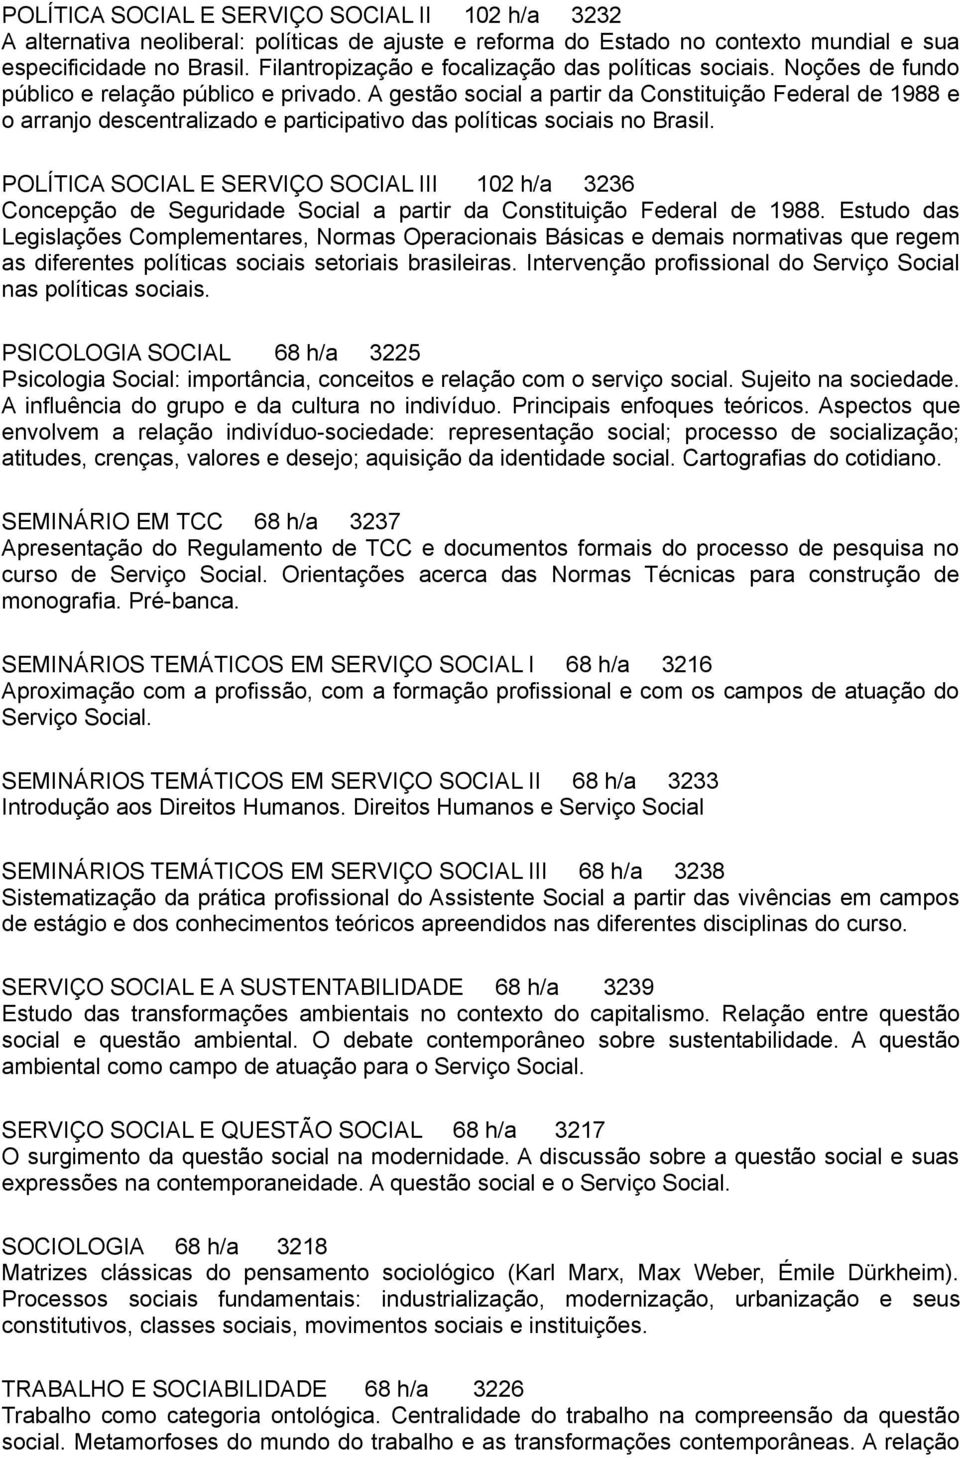 A gestão social a partir da Constituição Federal de 1988 e o arranjo descentralizado e participativo das políticas sociais no Brasil.